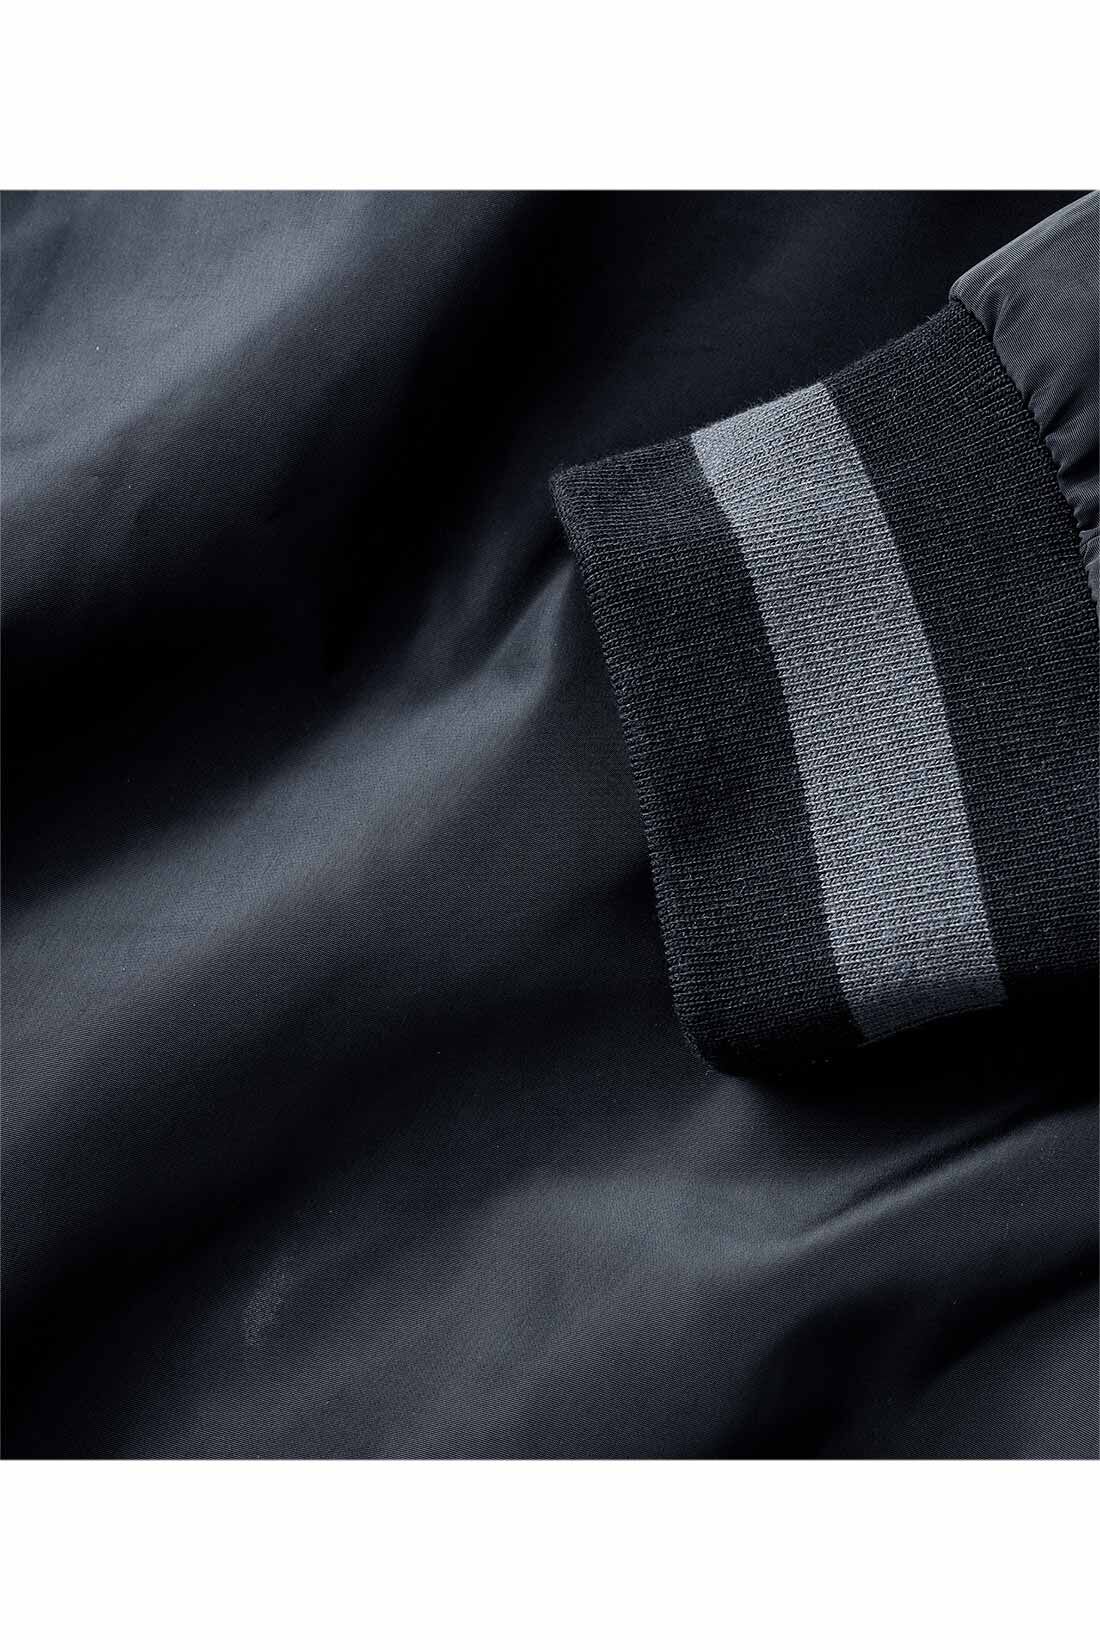 IEDIT|IEDIT[イディット]　小森美穂子さんコラボ きれいめ大人長め丈スタジャン〈ブラック〉|品よく着られる、テカリをおさえたポリエステル素材。